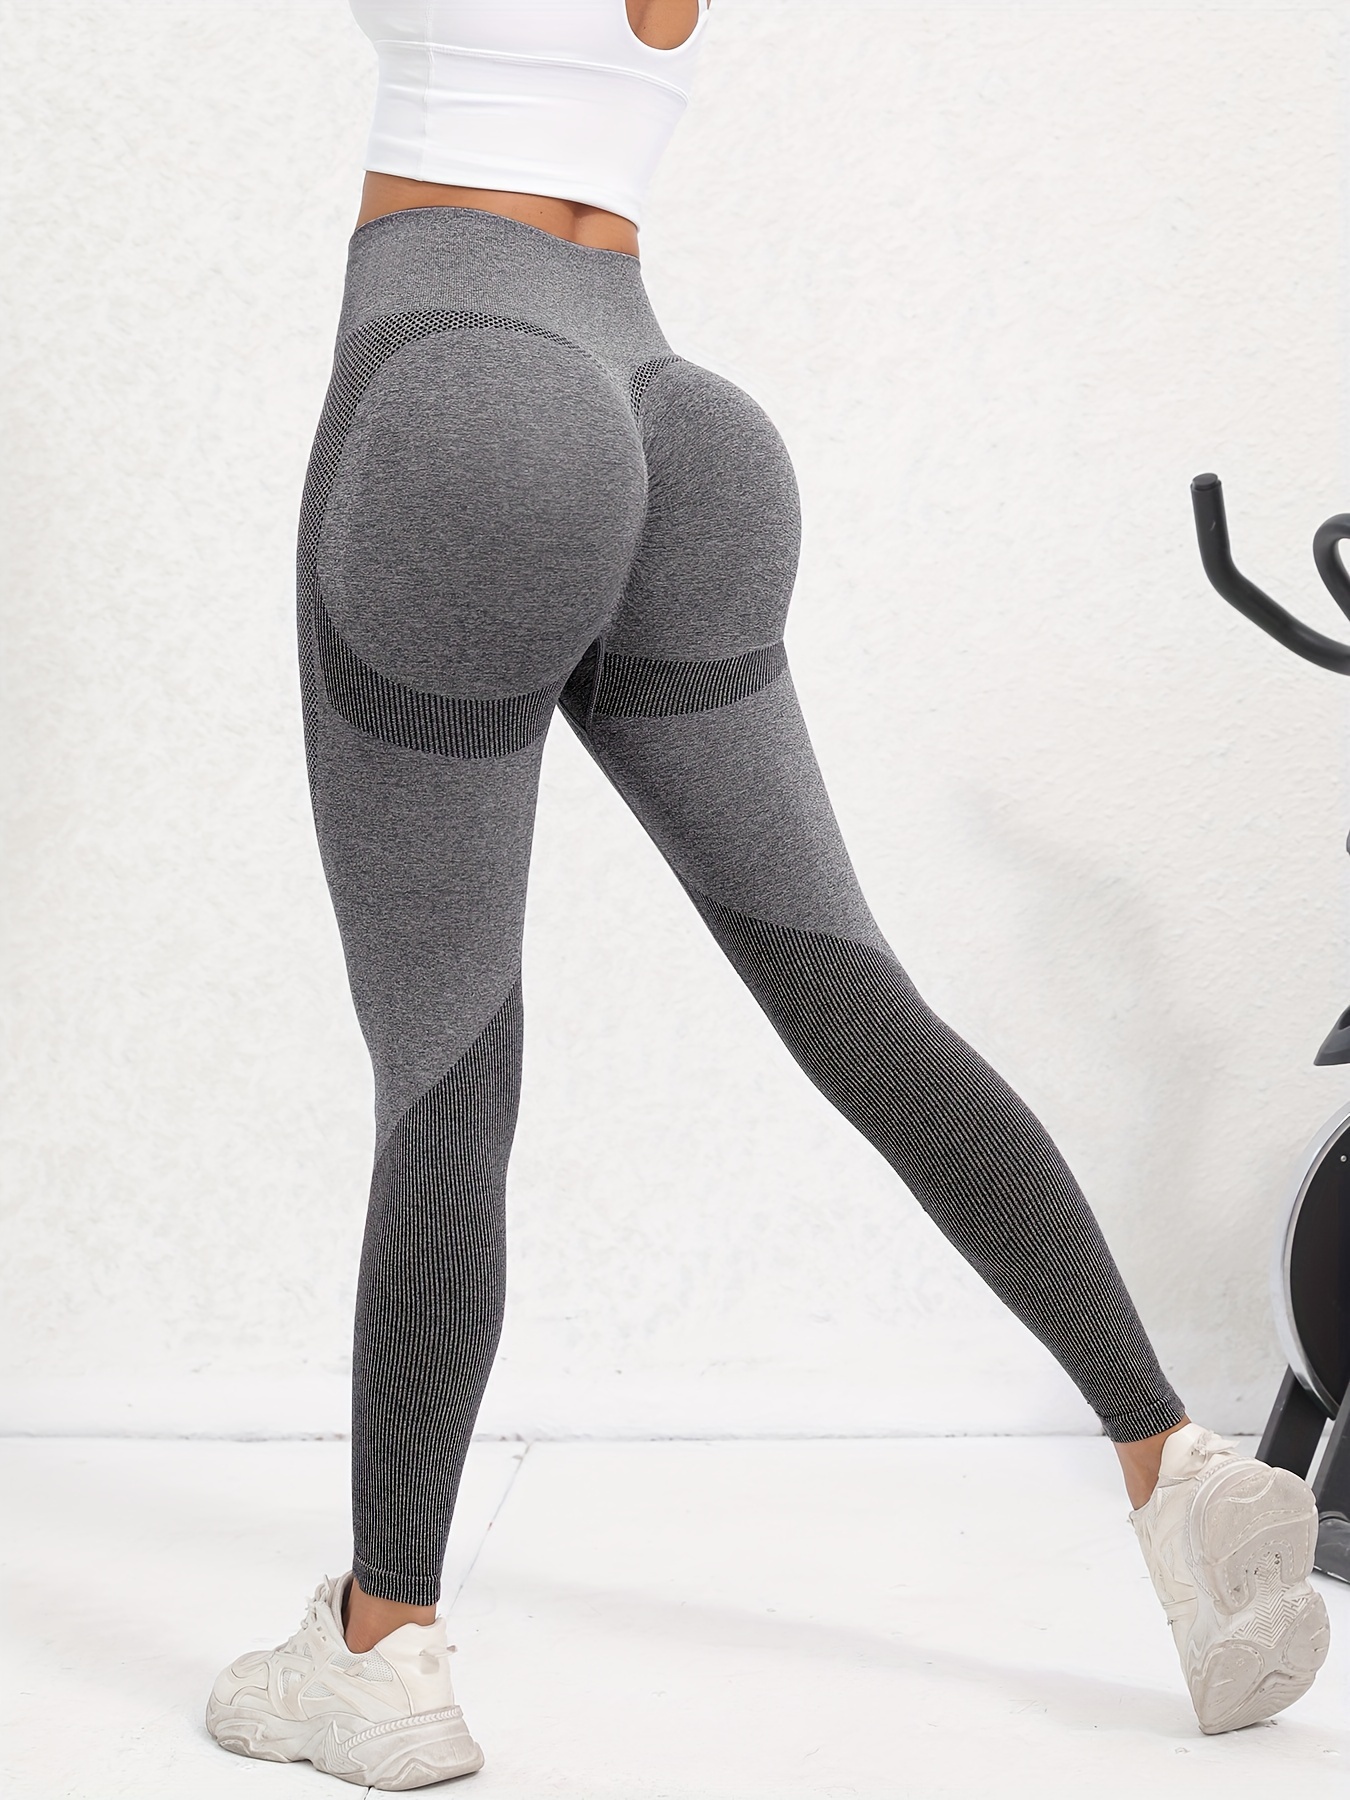 Booty Seamless Sport Women Fitness High Waist Yoga Pants